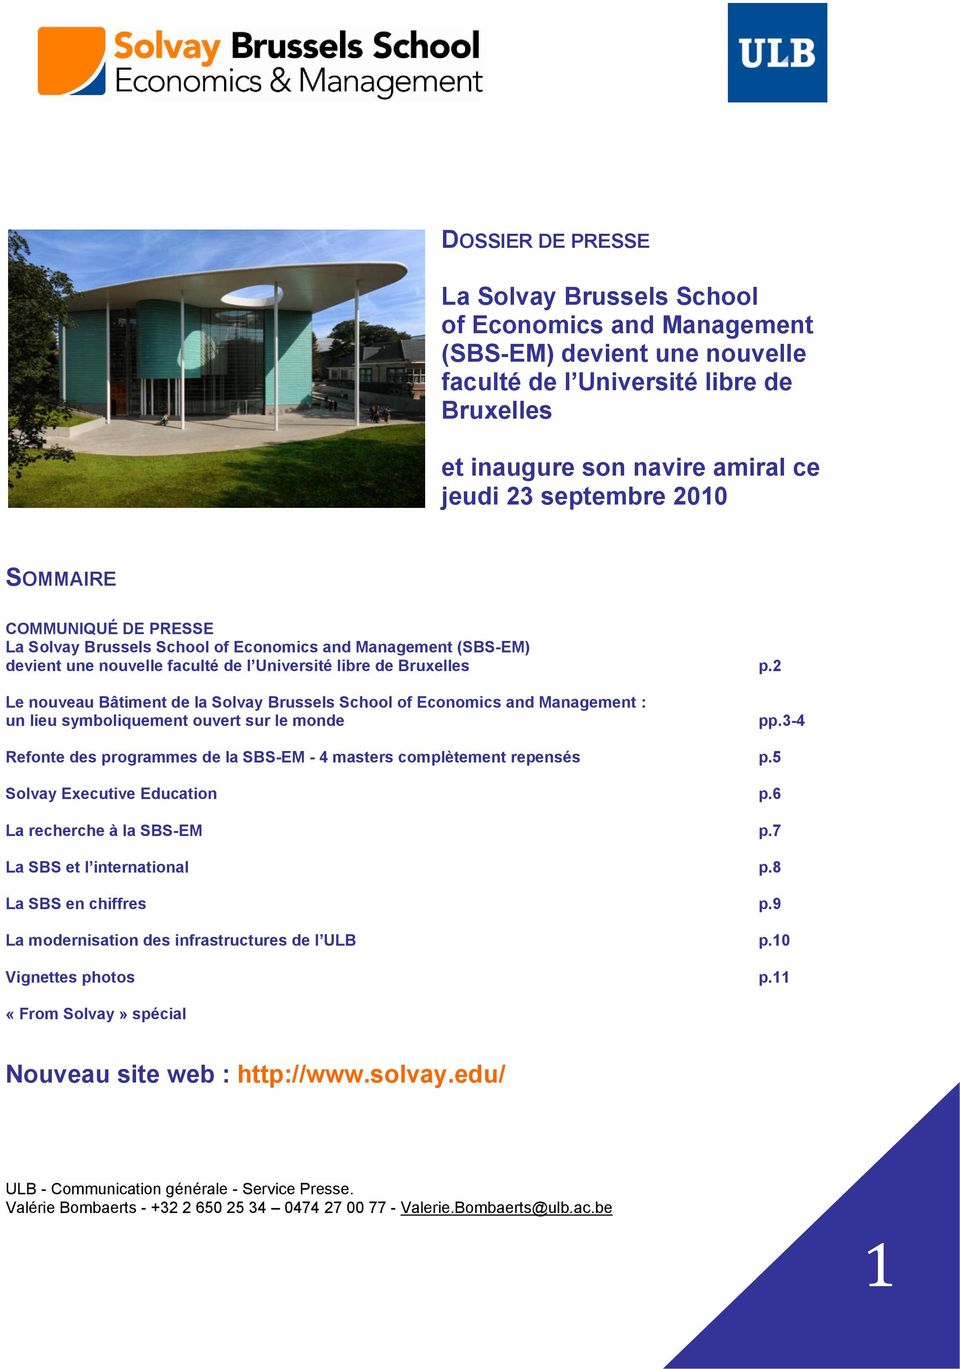 2 Le nouveau Bâtiment de la Solvay Brussels School of Economics and Management : un lieu symboliquement ouvert sur le monde pp.